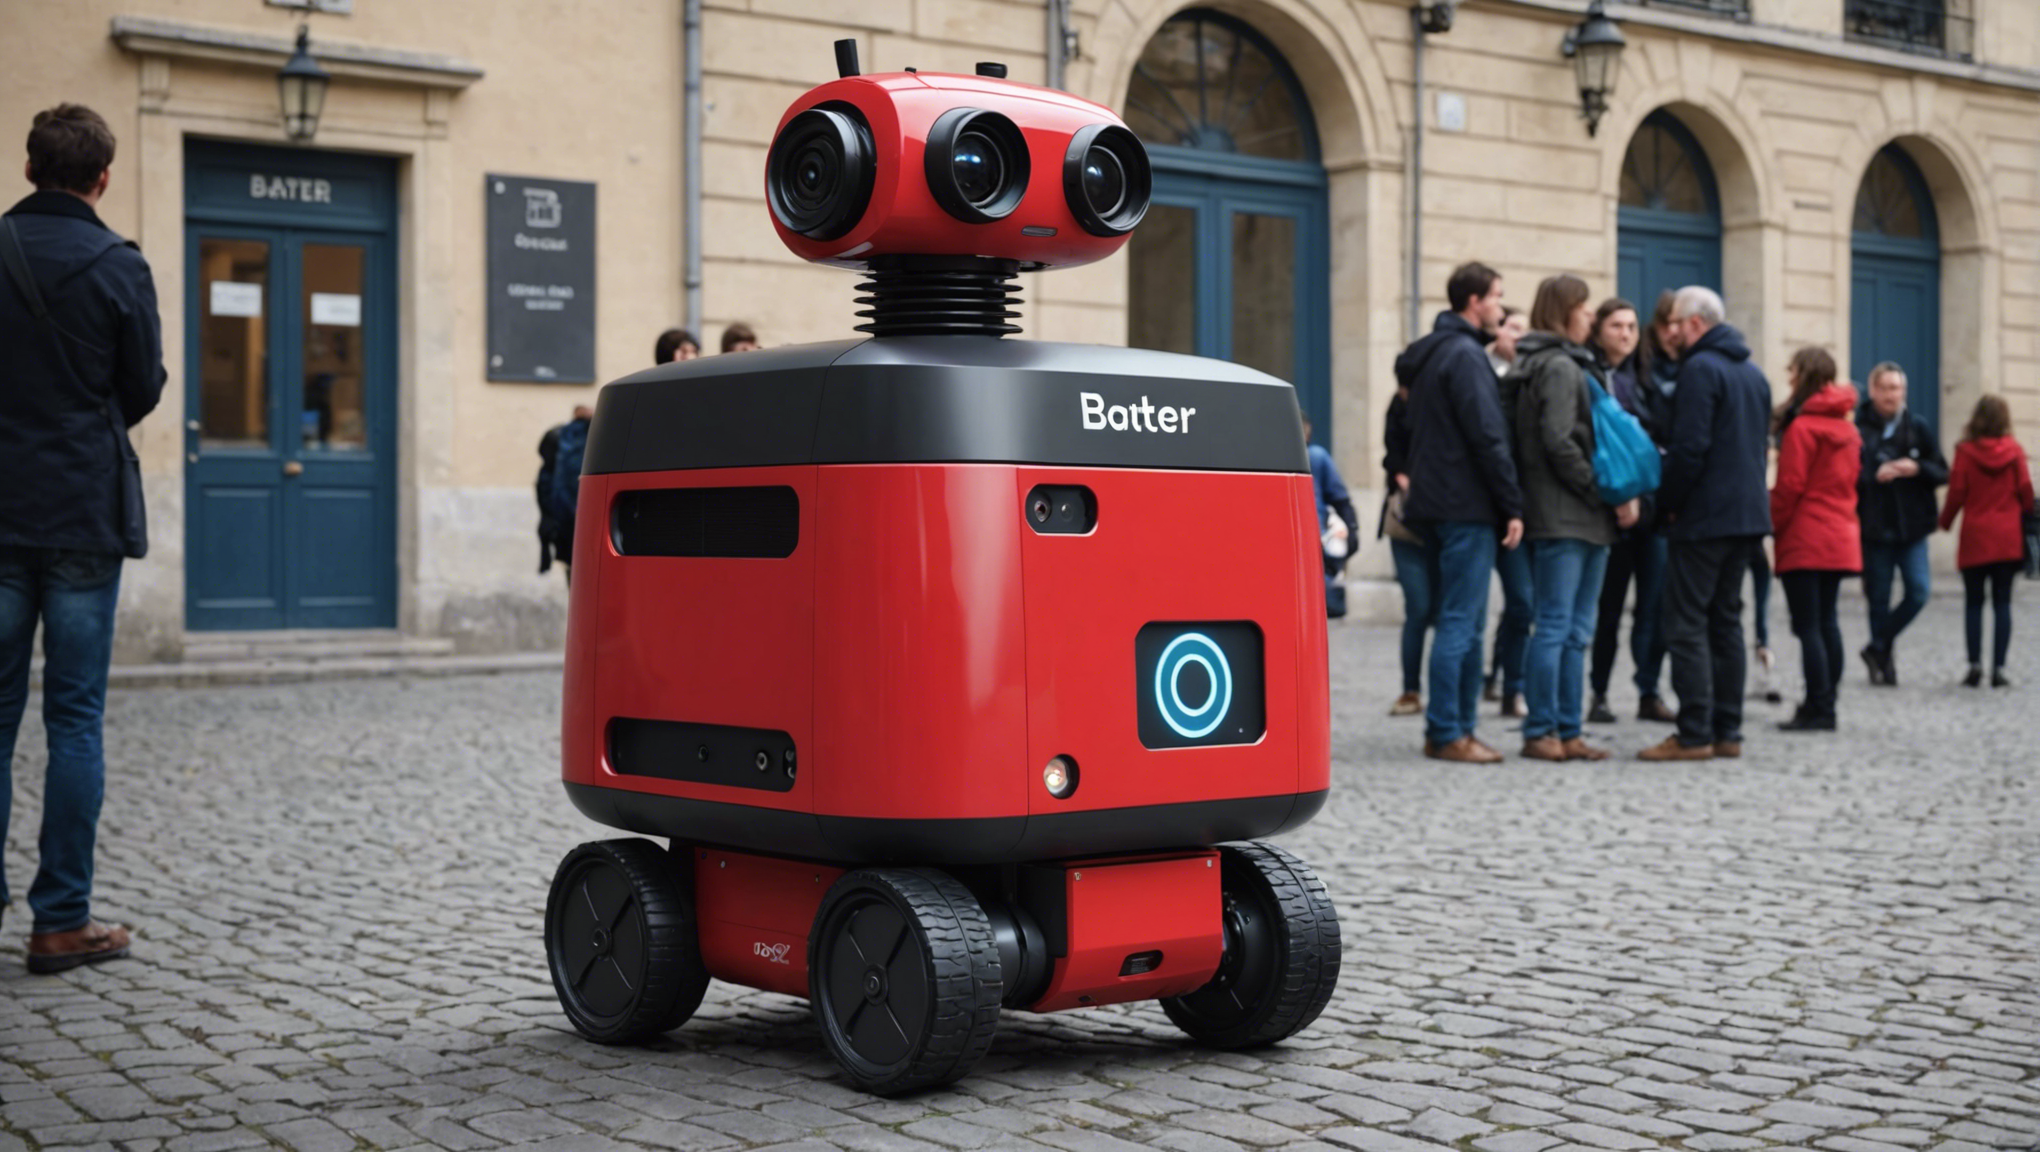 découvrez l'arrivée du robot baxter à l'école centrale de nantes (france) et comment il révolutionne l'apprentissage et la recherche en robotique.